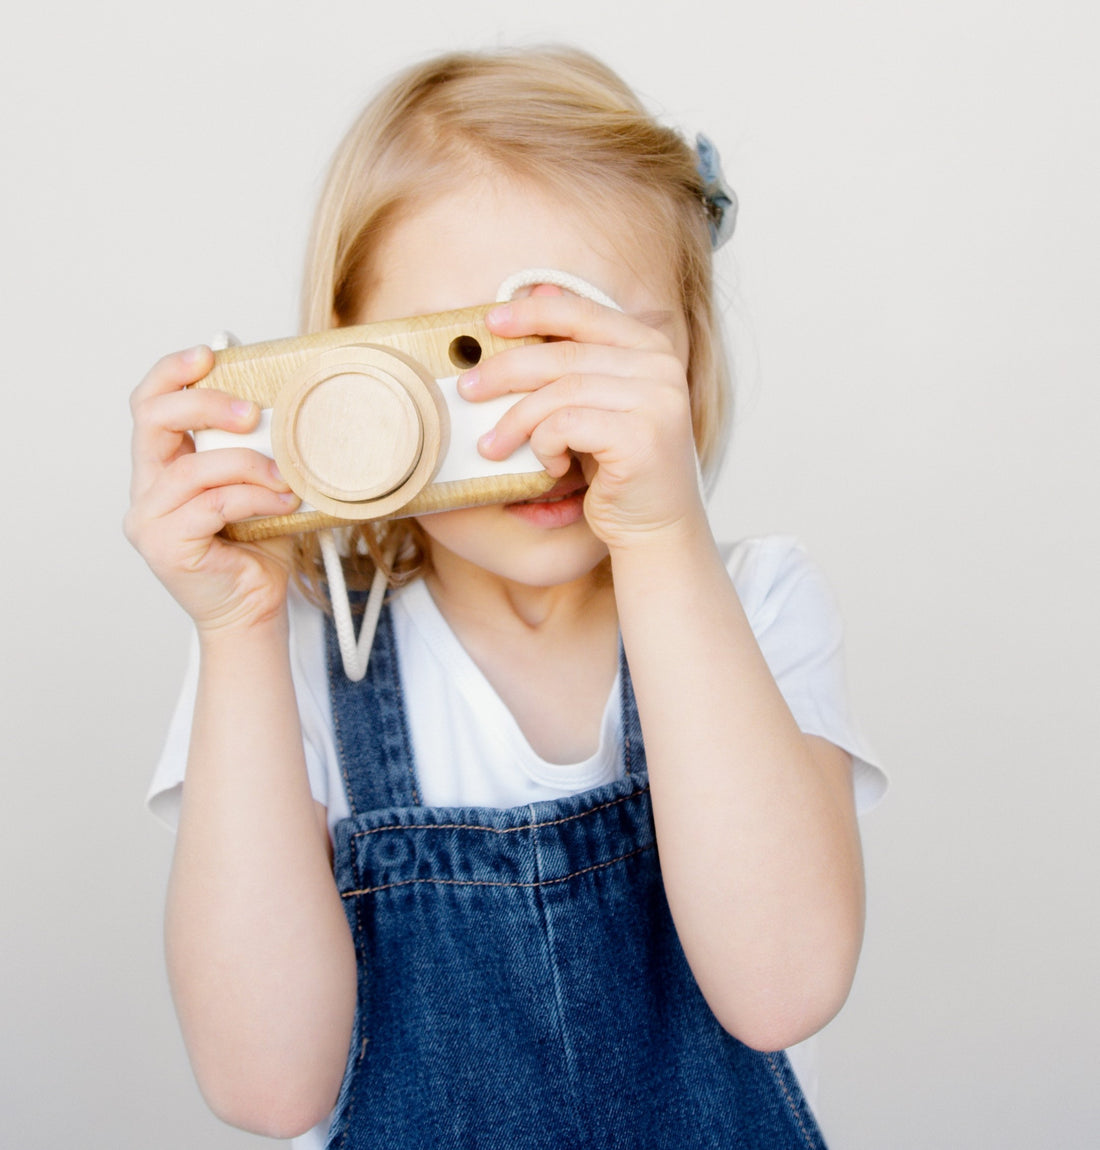 winactie fenna florien - foto wedstrijd - gratis kindermeubel winnen